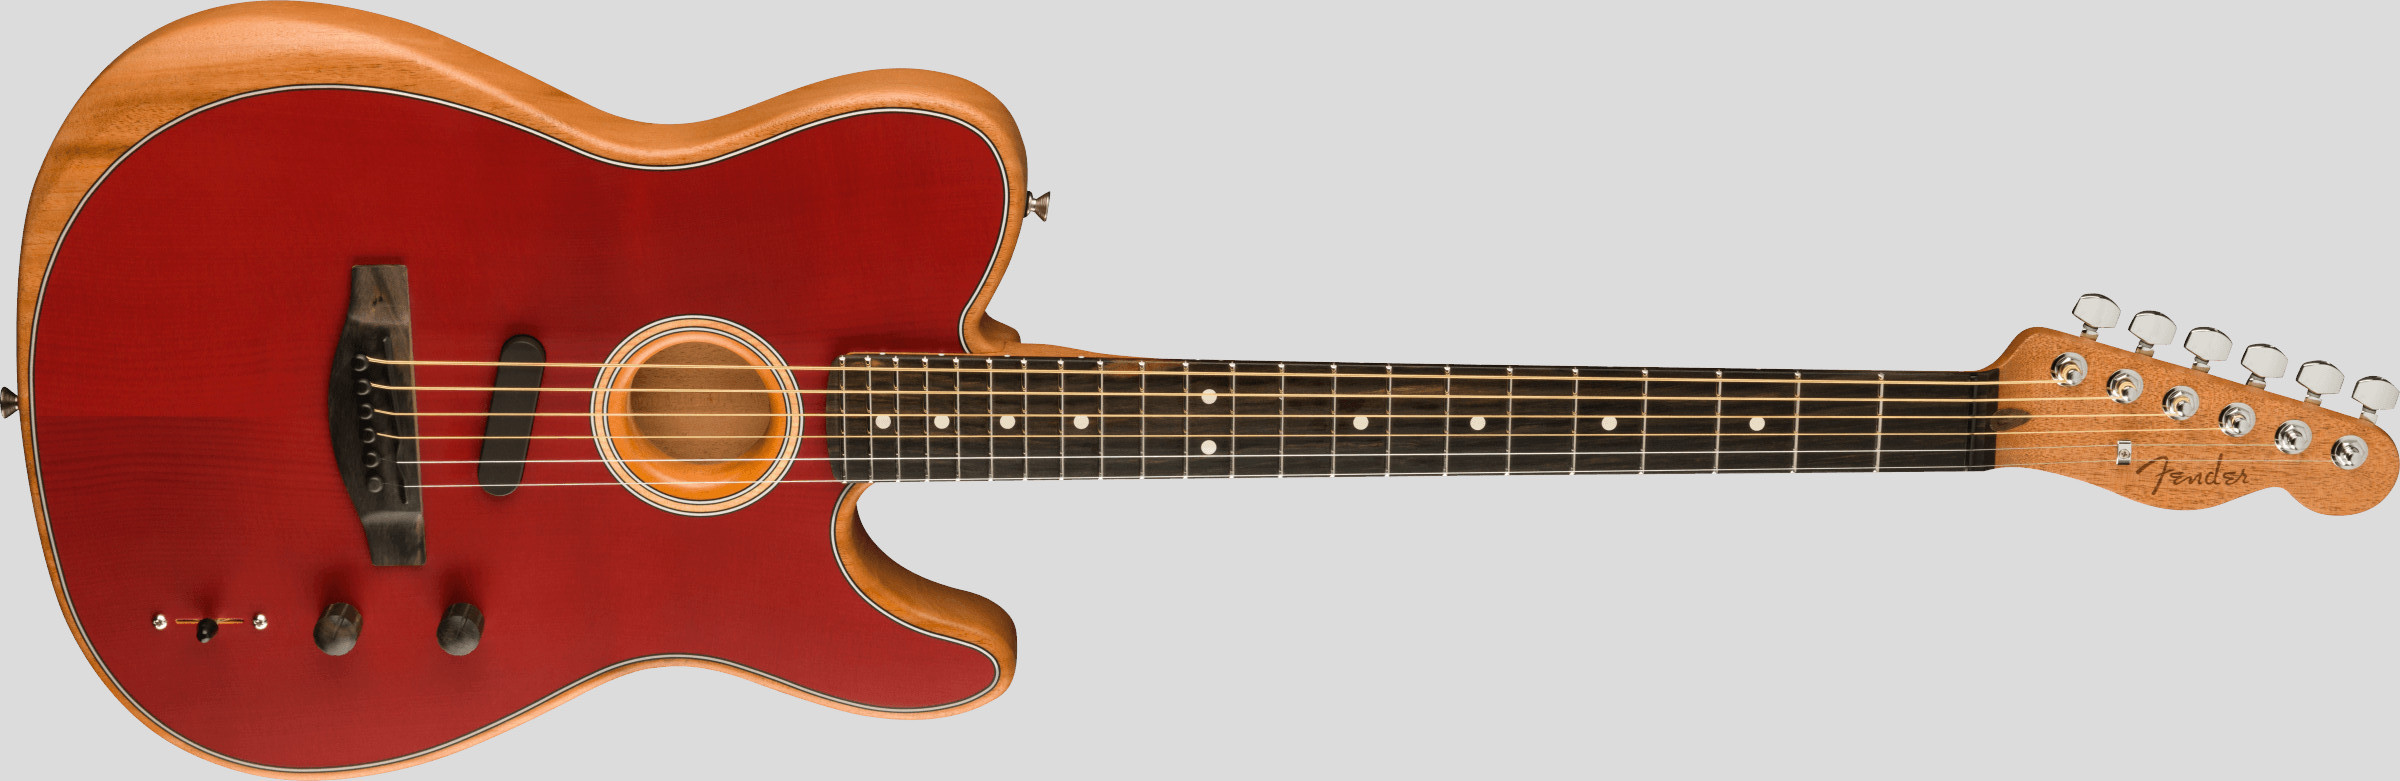 Fender American Acoustasonic Telecaster Crimson Red 4